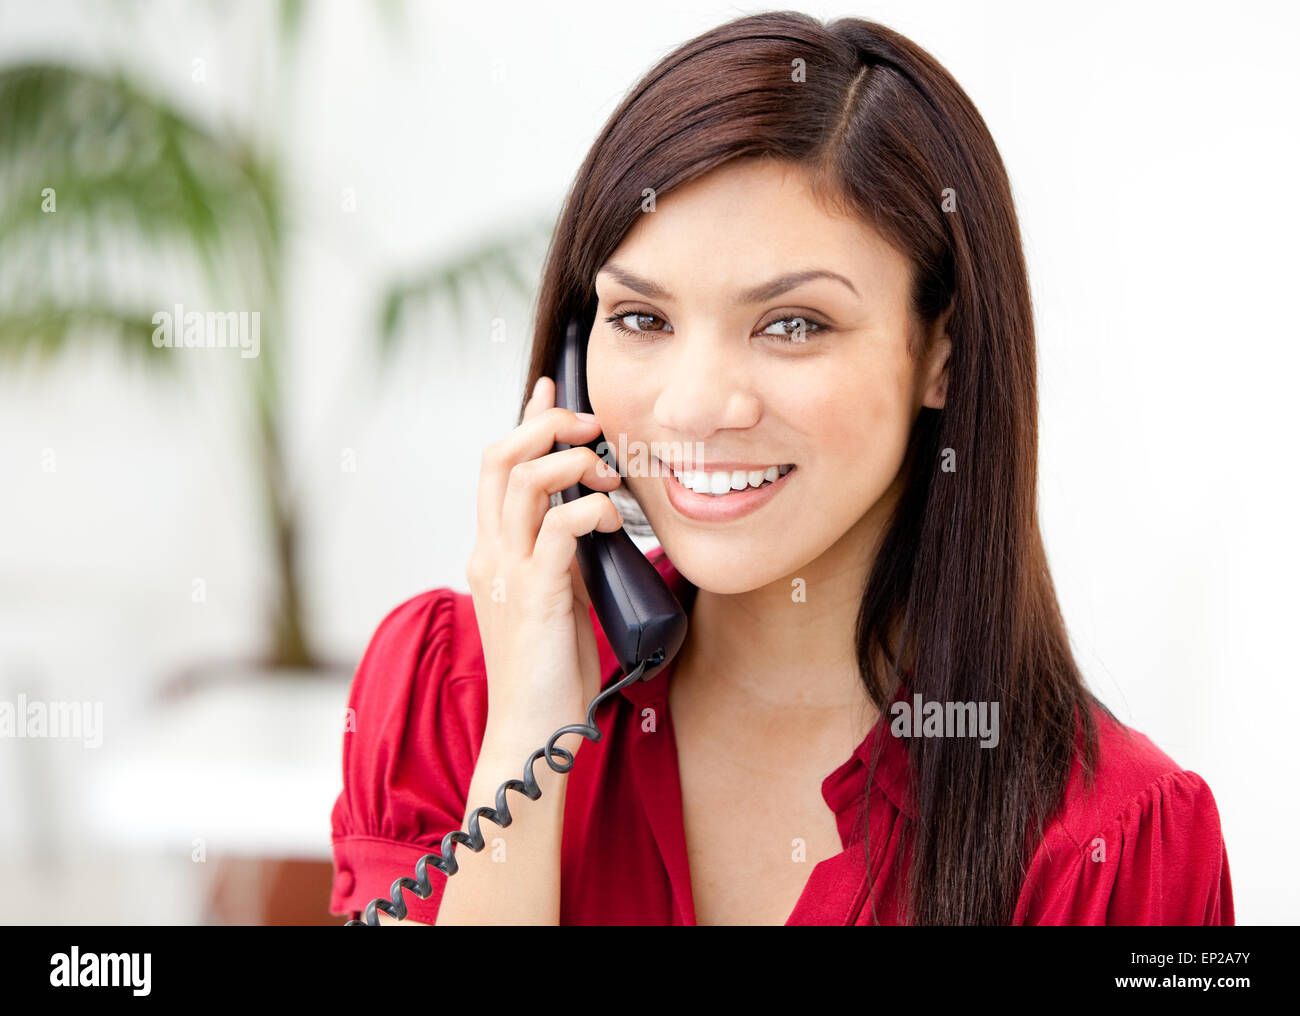 Девушка позвонить телефон номер. Женщина с телефонной трубкой. Девушка с телефоном в офисе. Девушка говорит по телефону и улыбается. Девушка с трубкой телефона.